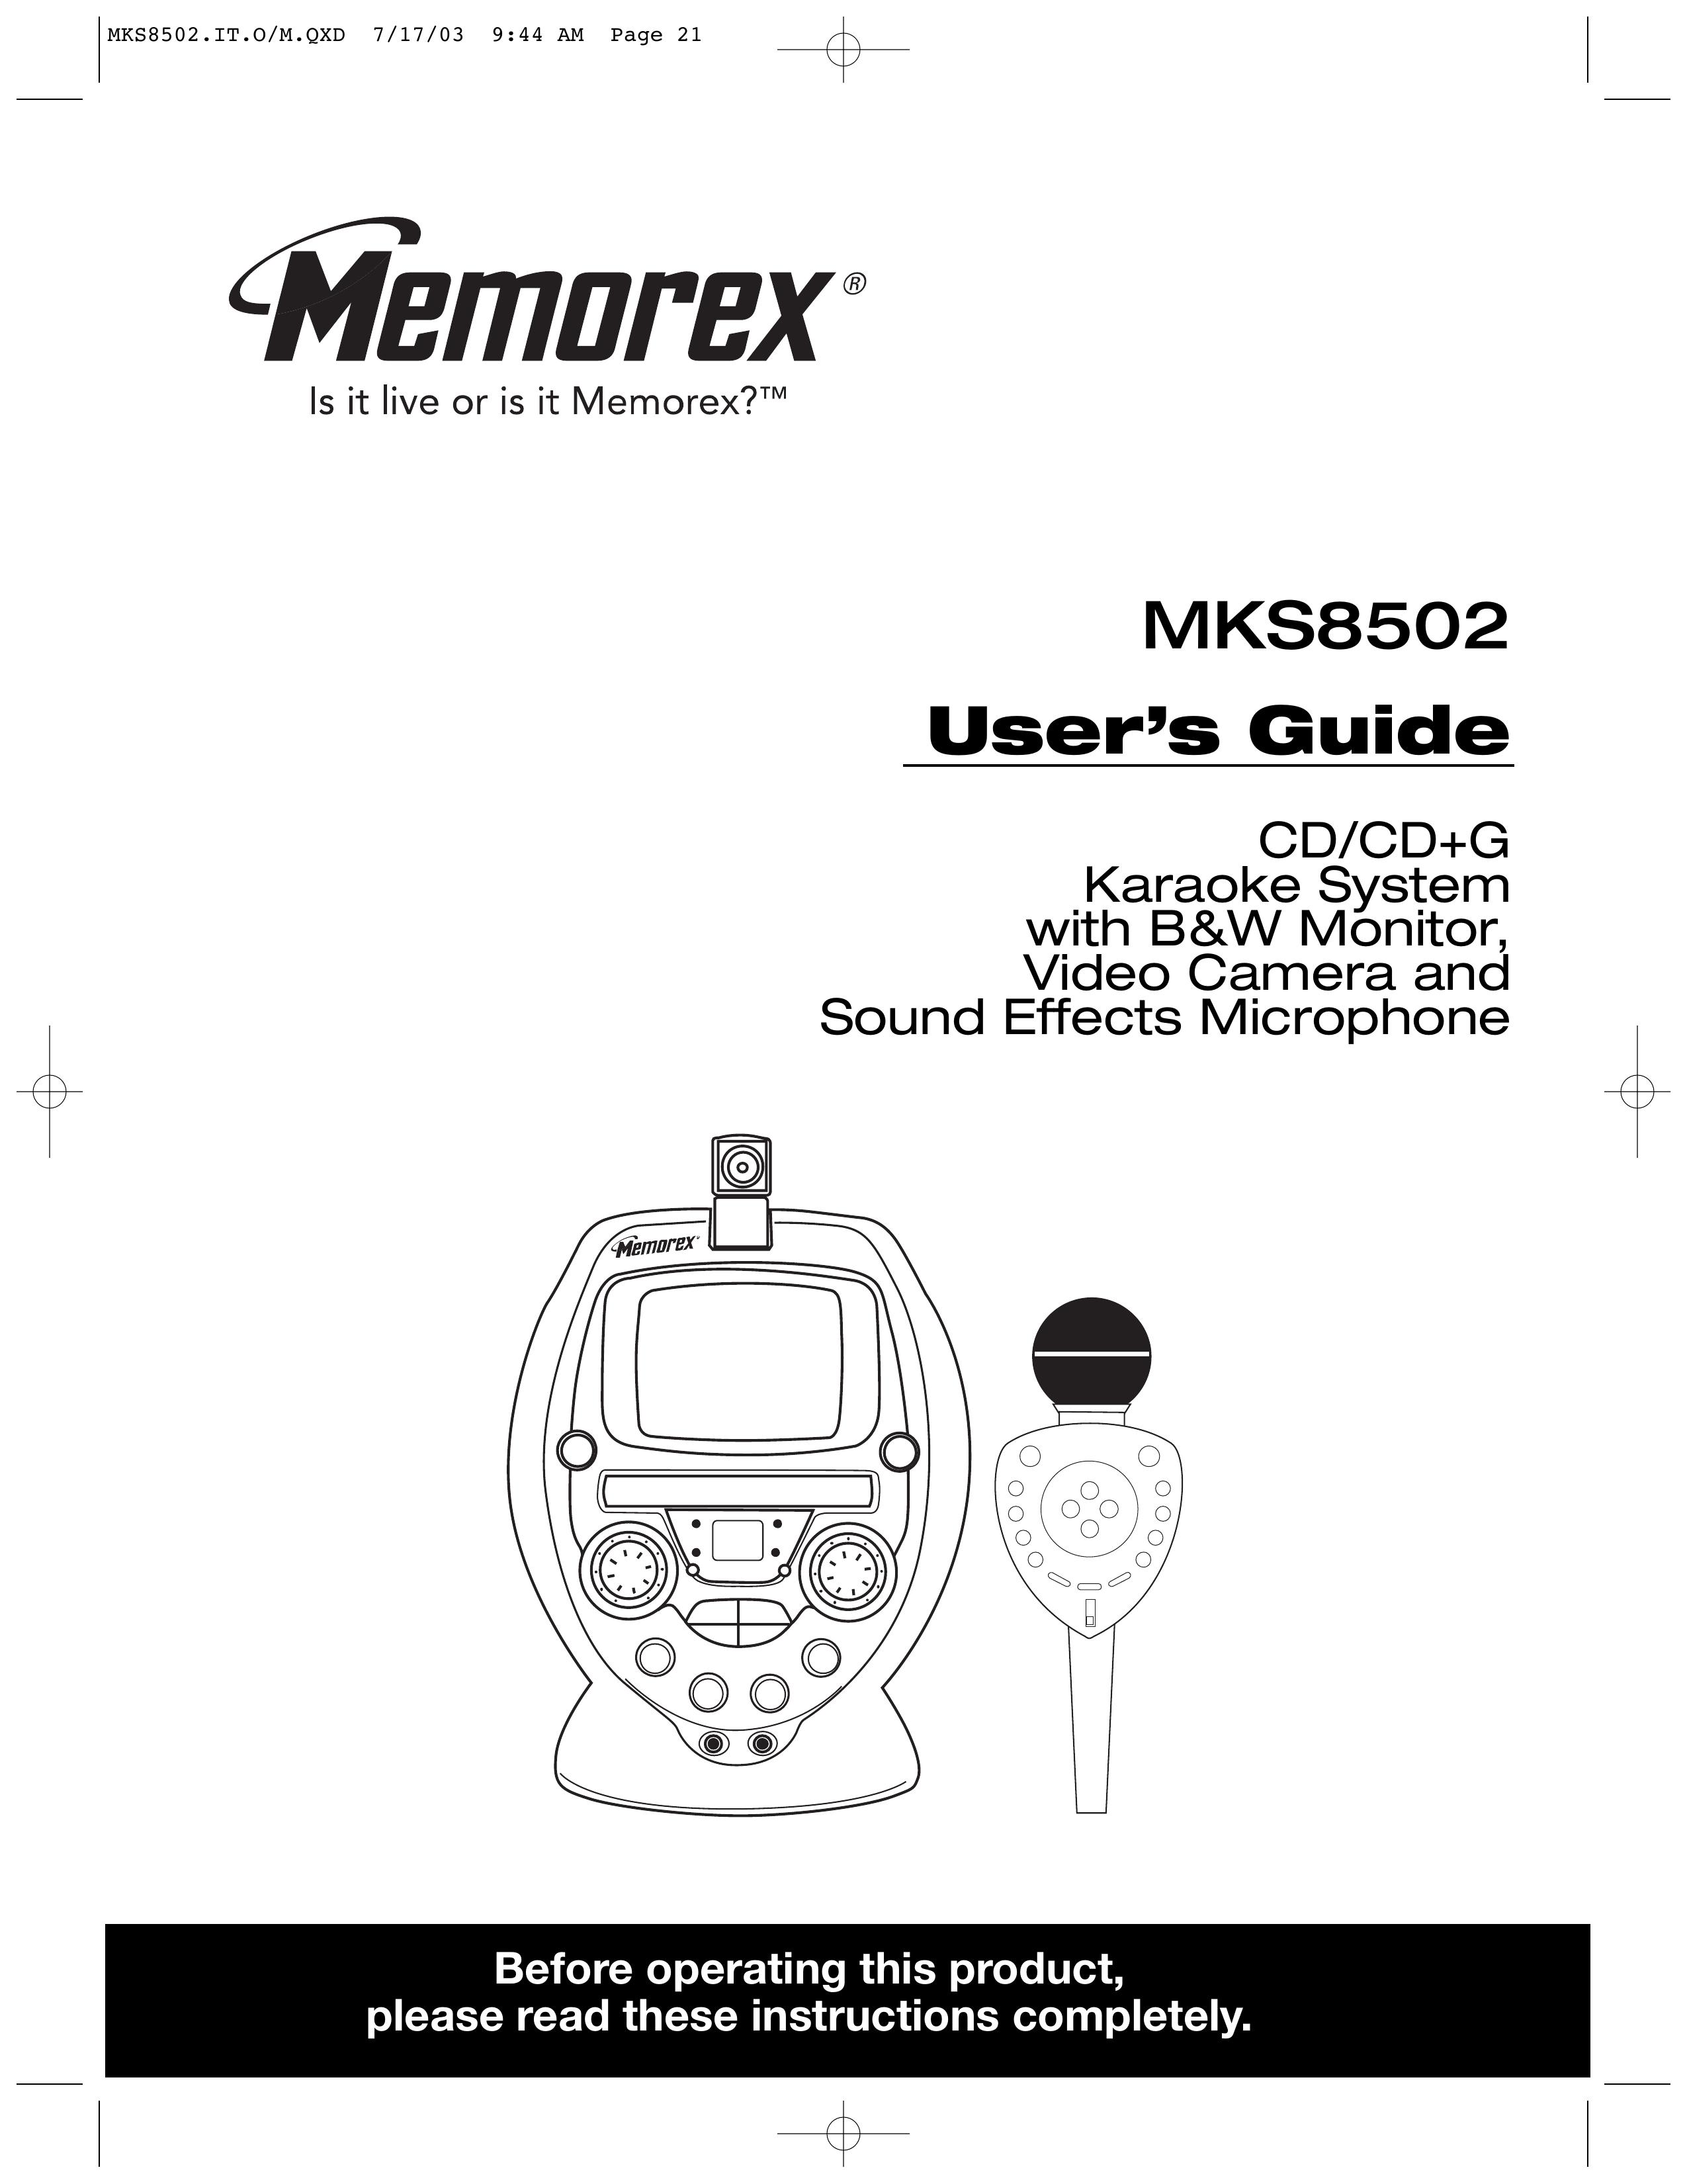 Memorex MKS8502 Karaoke Machine User Manual (Page 1)